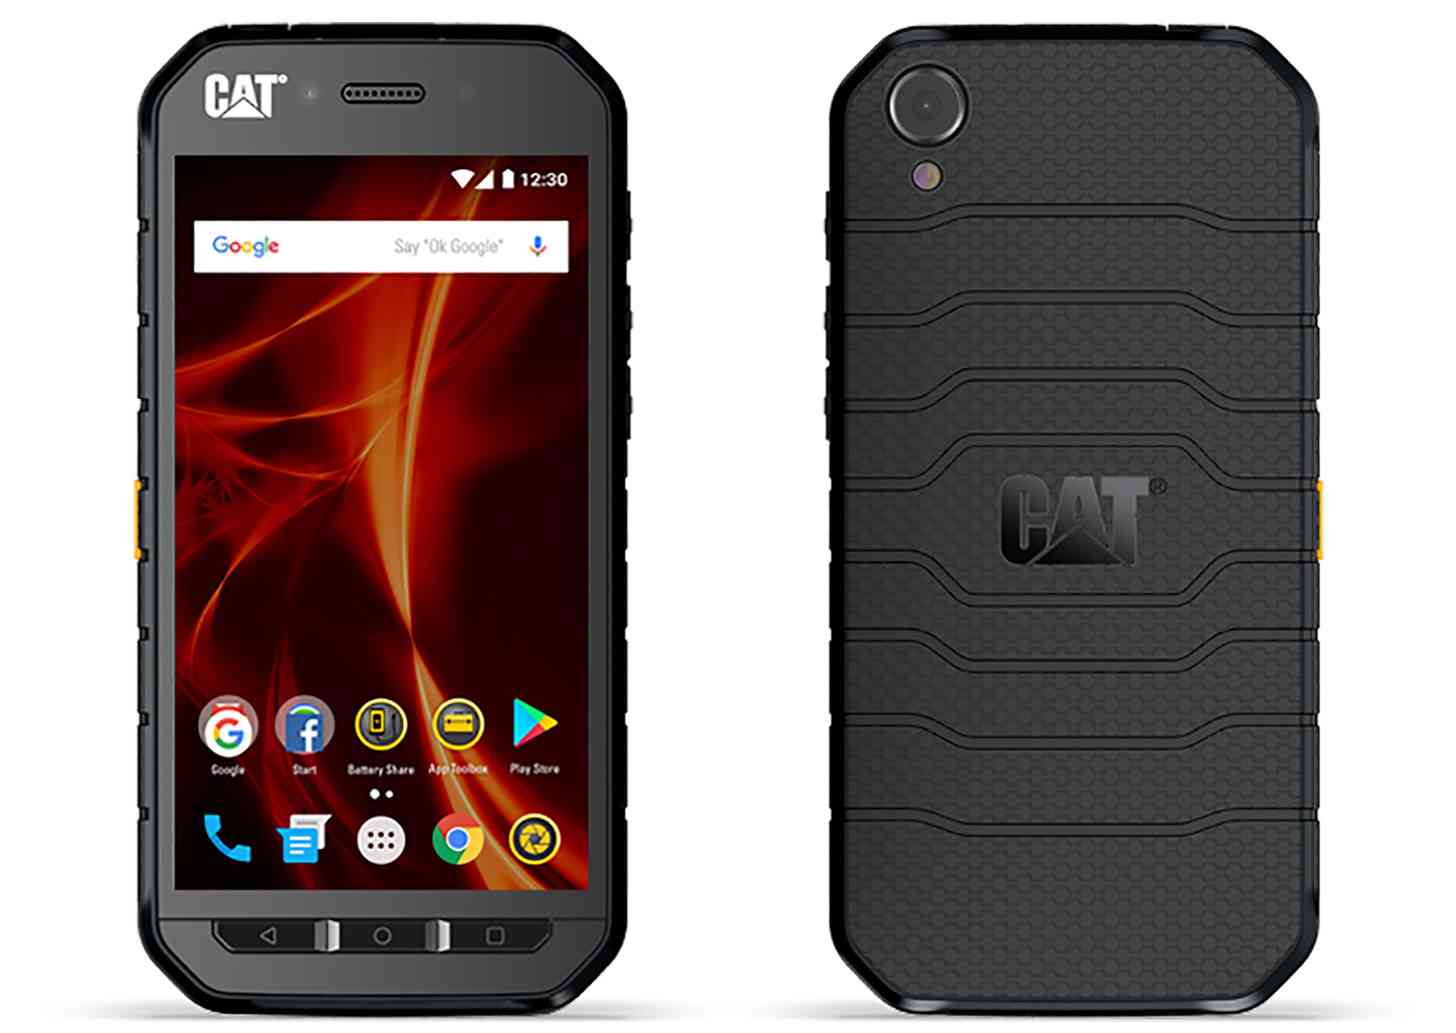 Cat S41 Caterpillar Android phone